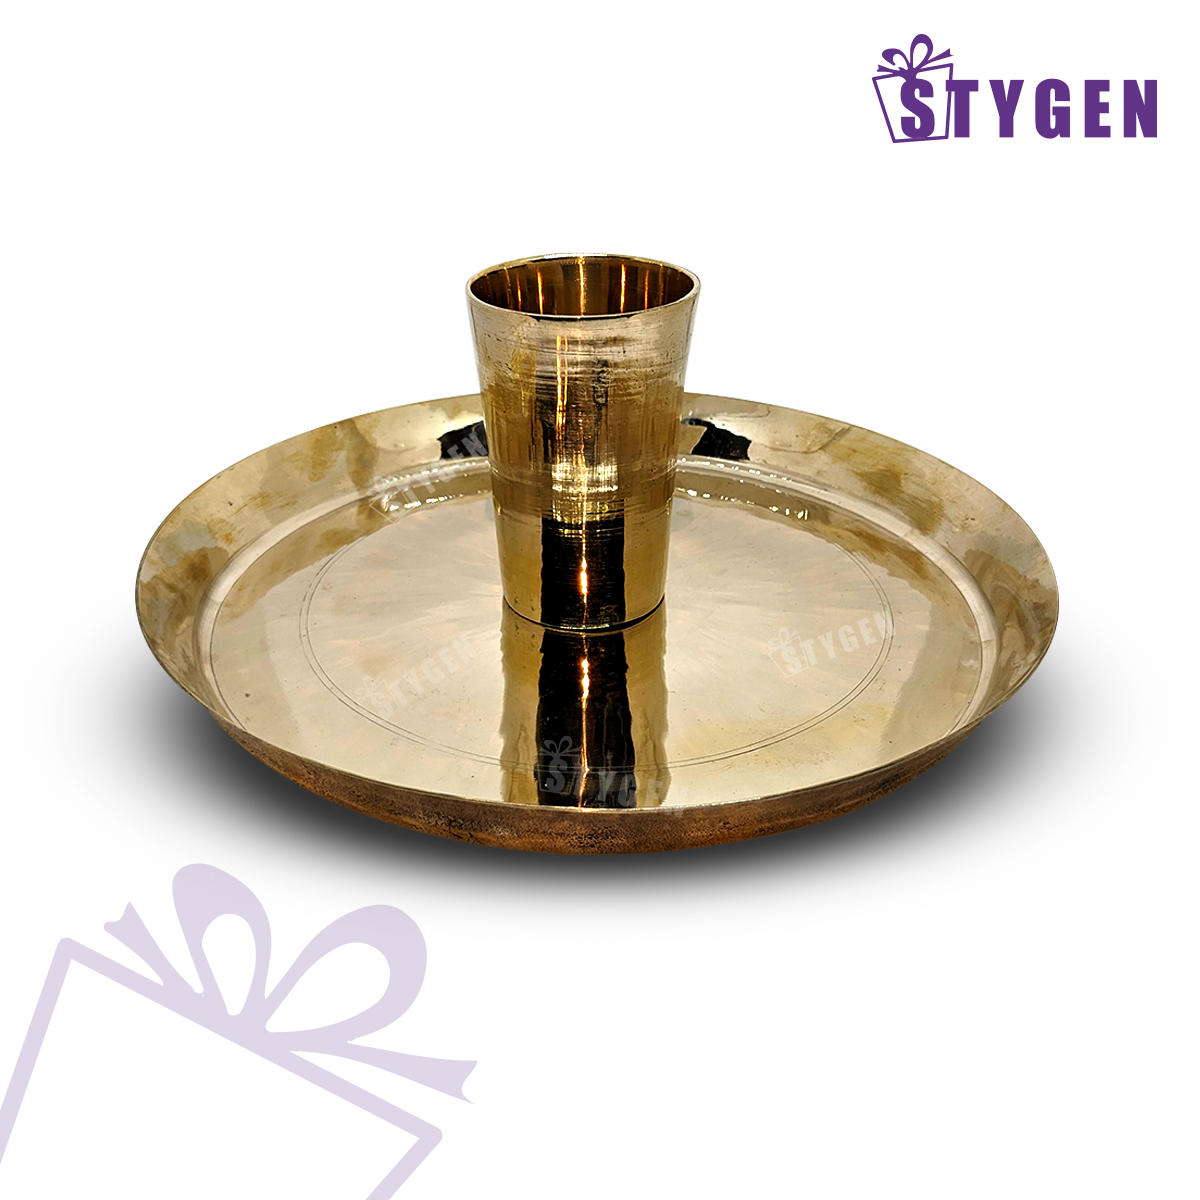 ইন্ডিয়ান কাসার প্লেট & গ্লাস - Indian Kasa Plate & Glass - Indian Bronze Made Plate & Glass